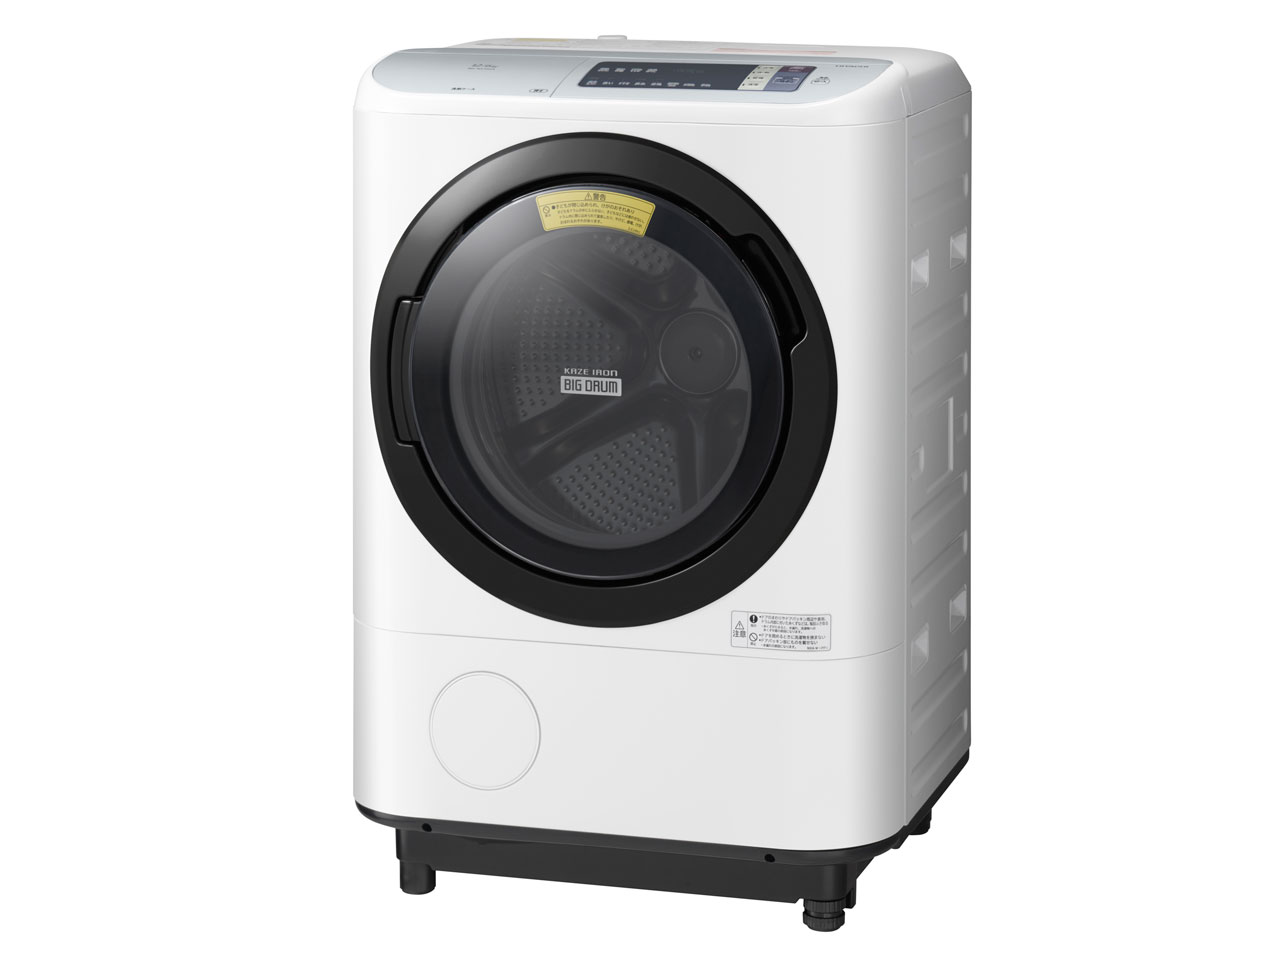 日立 BD-NX120AL-W ドラム式洗濯乾燥機「ビッグドラム」(洗濯12.0kg/乾燥6.0kg・左開き) ホワイト